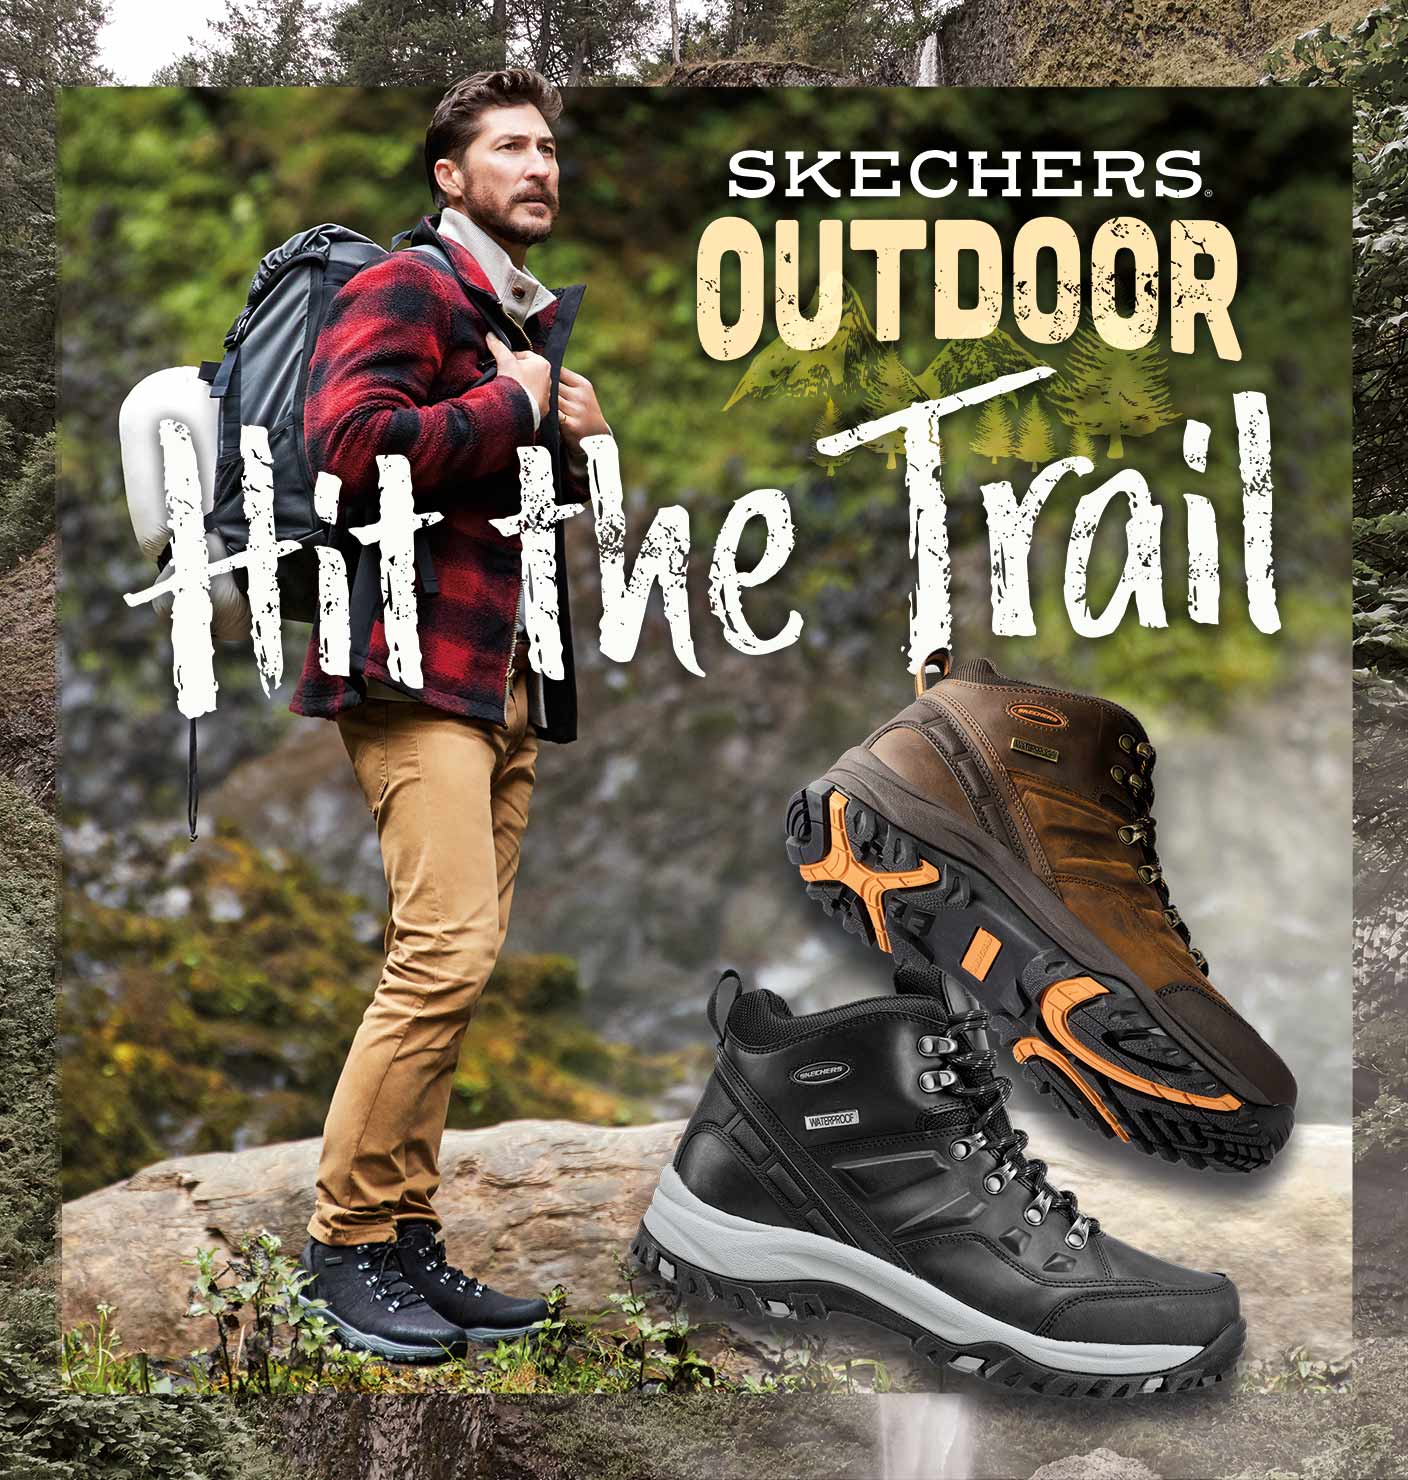 sketcher hikers \u003e Clearance shop